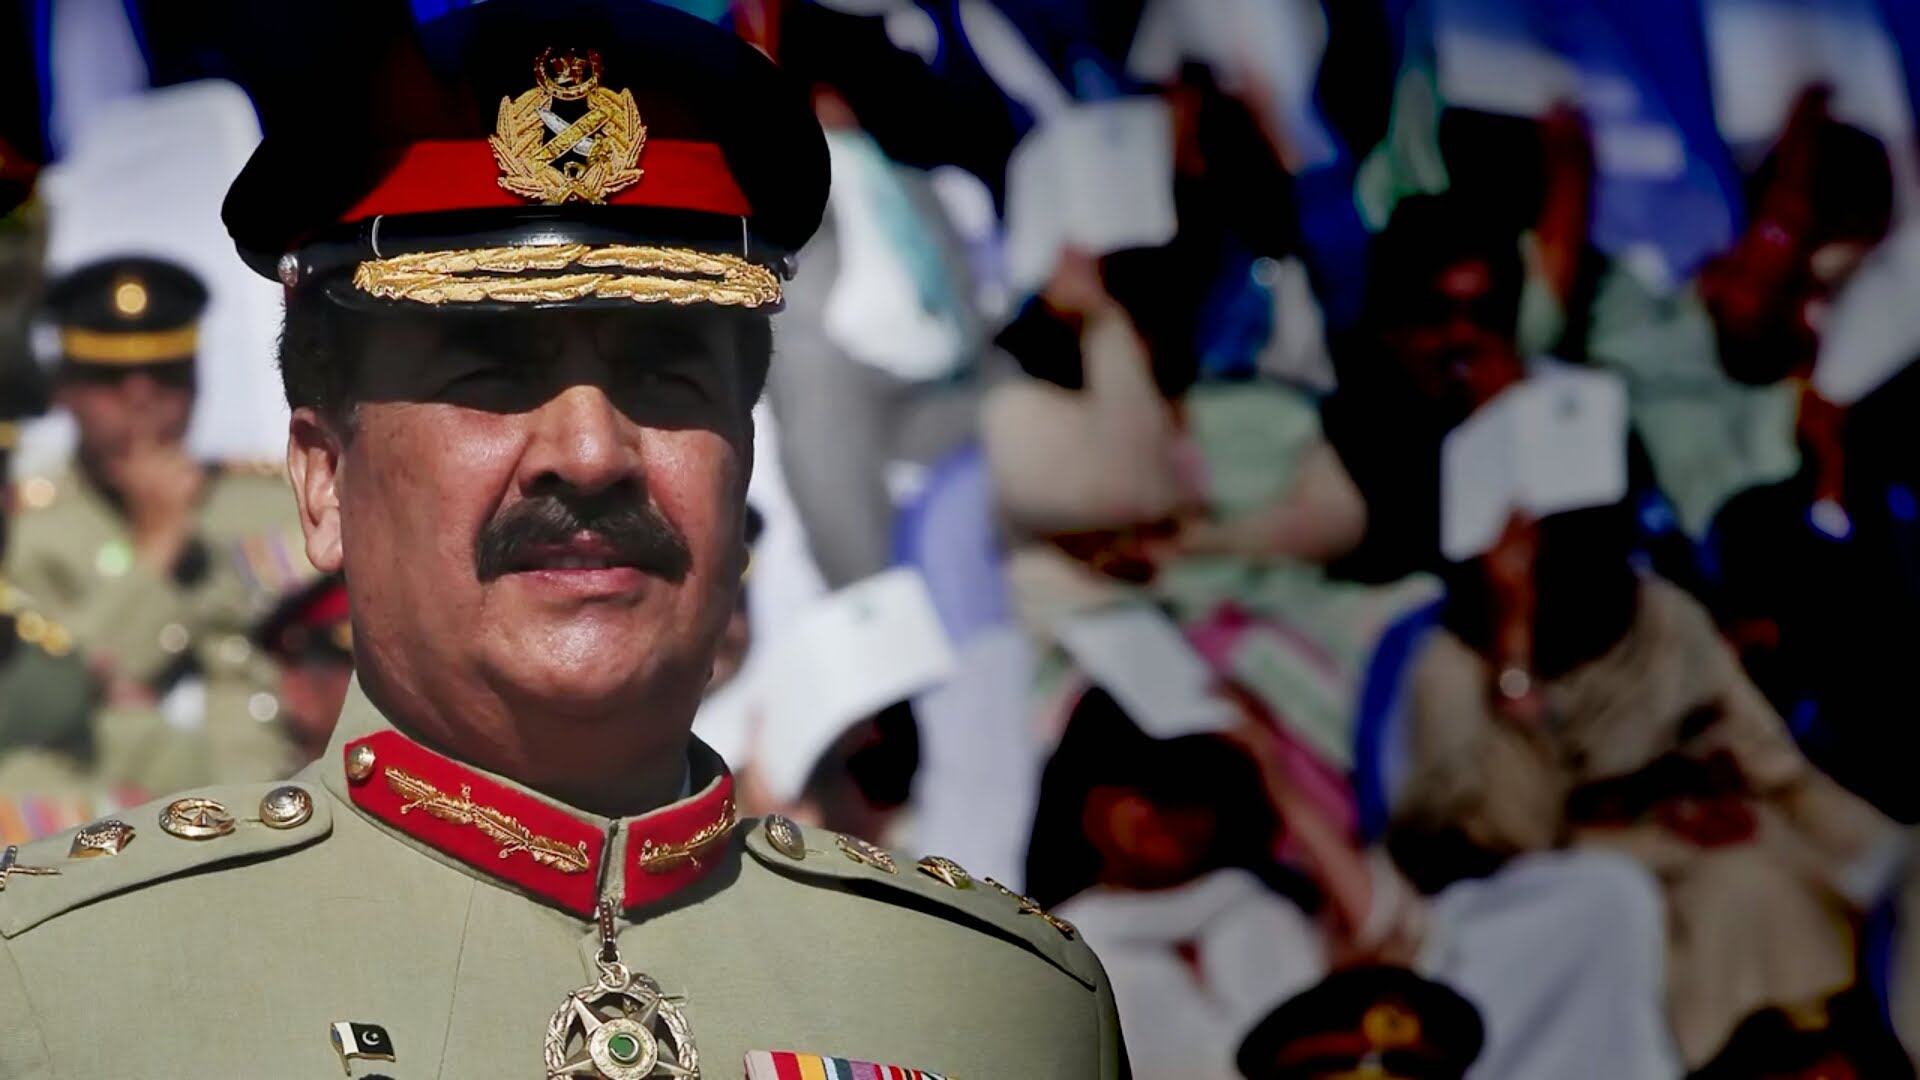 بعض حلقو ں کے بیانات قومی کاز کے لیے نقصان دہ ہیں، جنرل راحیل شریف کی تنبیہ!